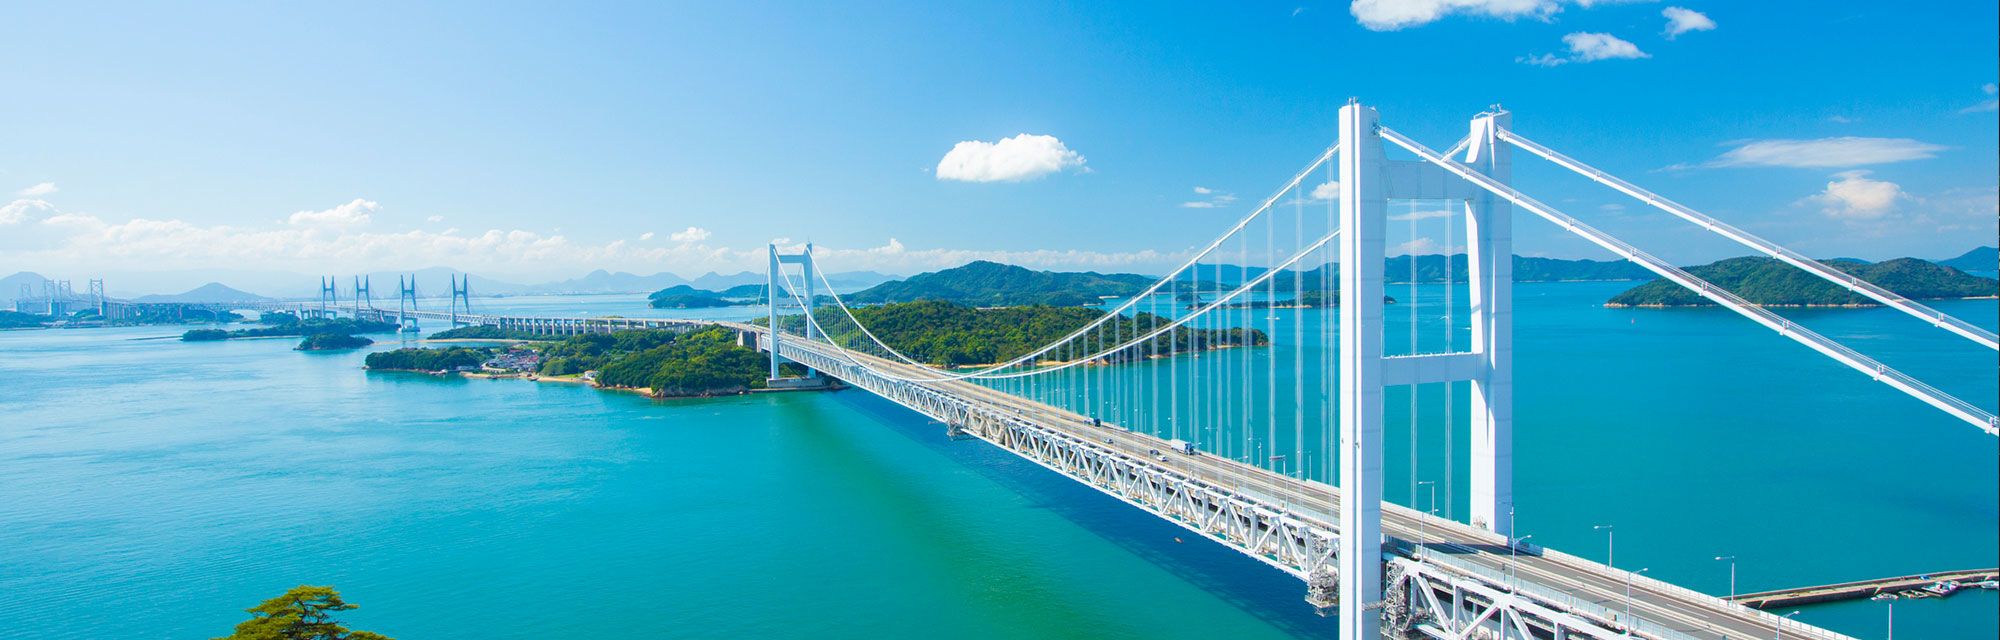 10 Jembatan Terindah Di Dunia